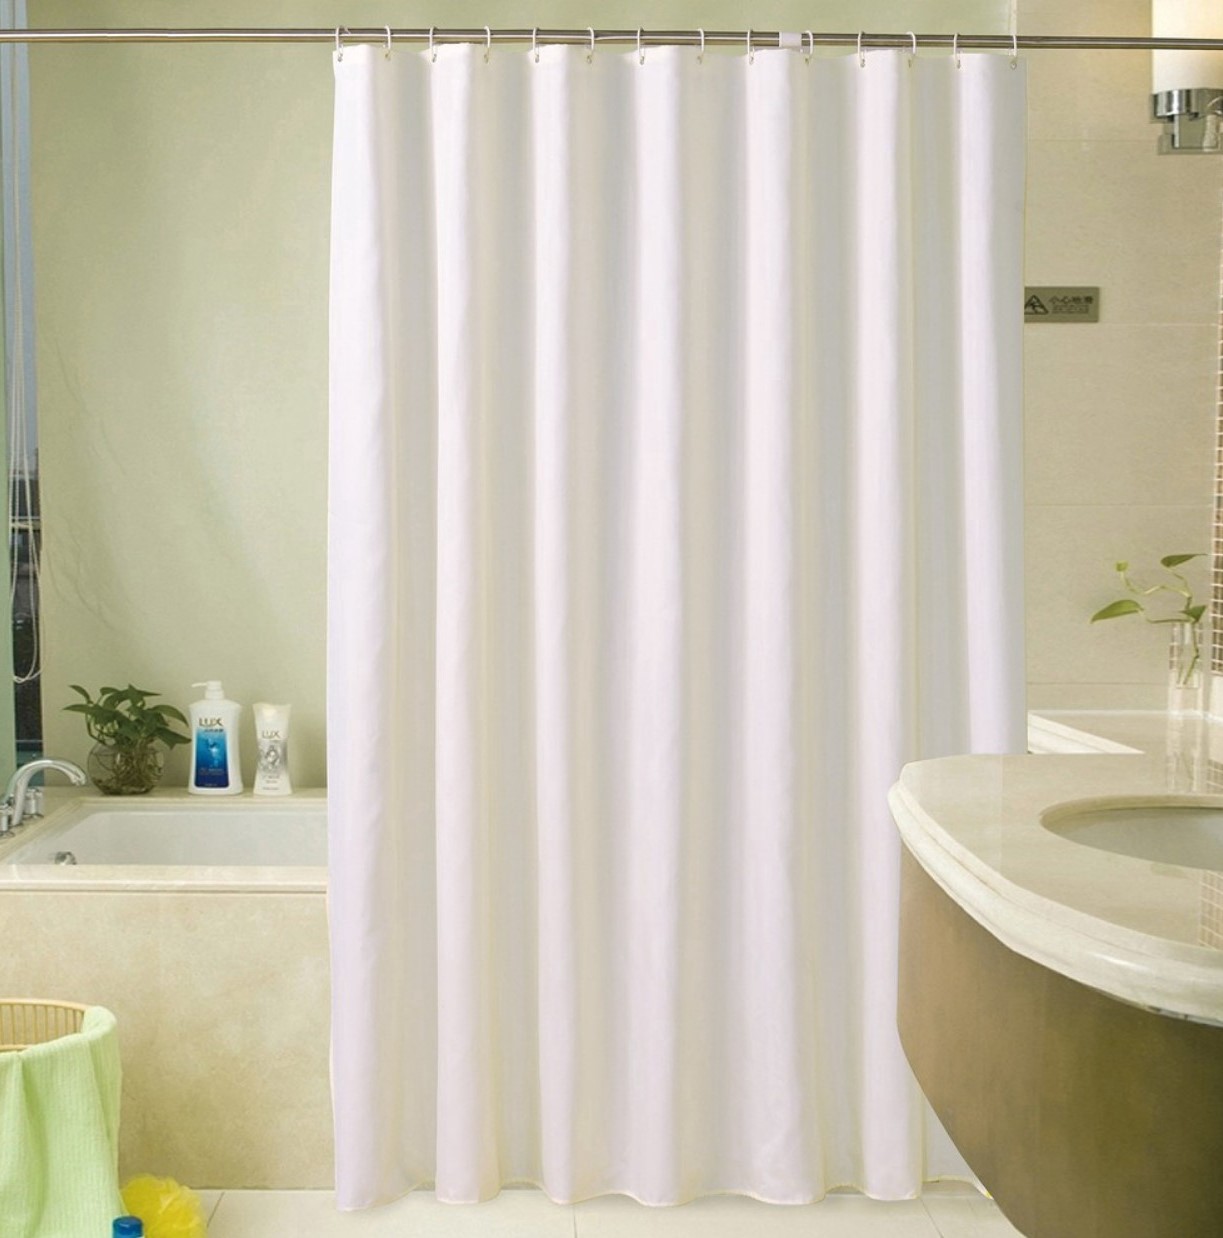 Rèm phòng tắm không thấm nước: Đảm bảo sự riêng tư cho gia đình cũng như giữ gìn sự sạch sẽ cho không gian phòng tắm với rèm cửa không thấm nước. Đến xem hình ảnh sản phẩm để tìm hiểu thêm!